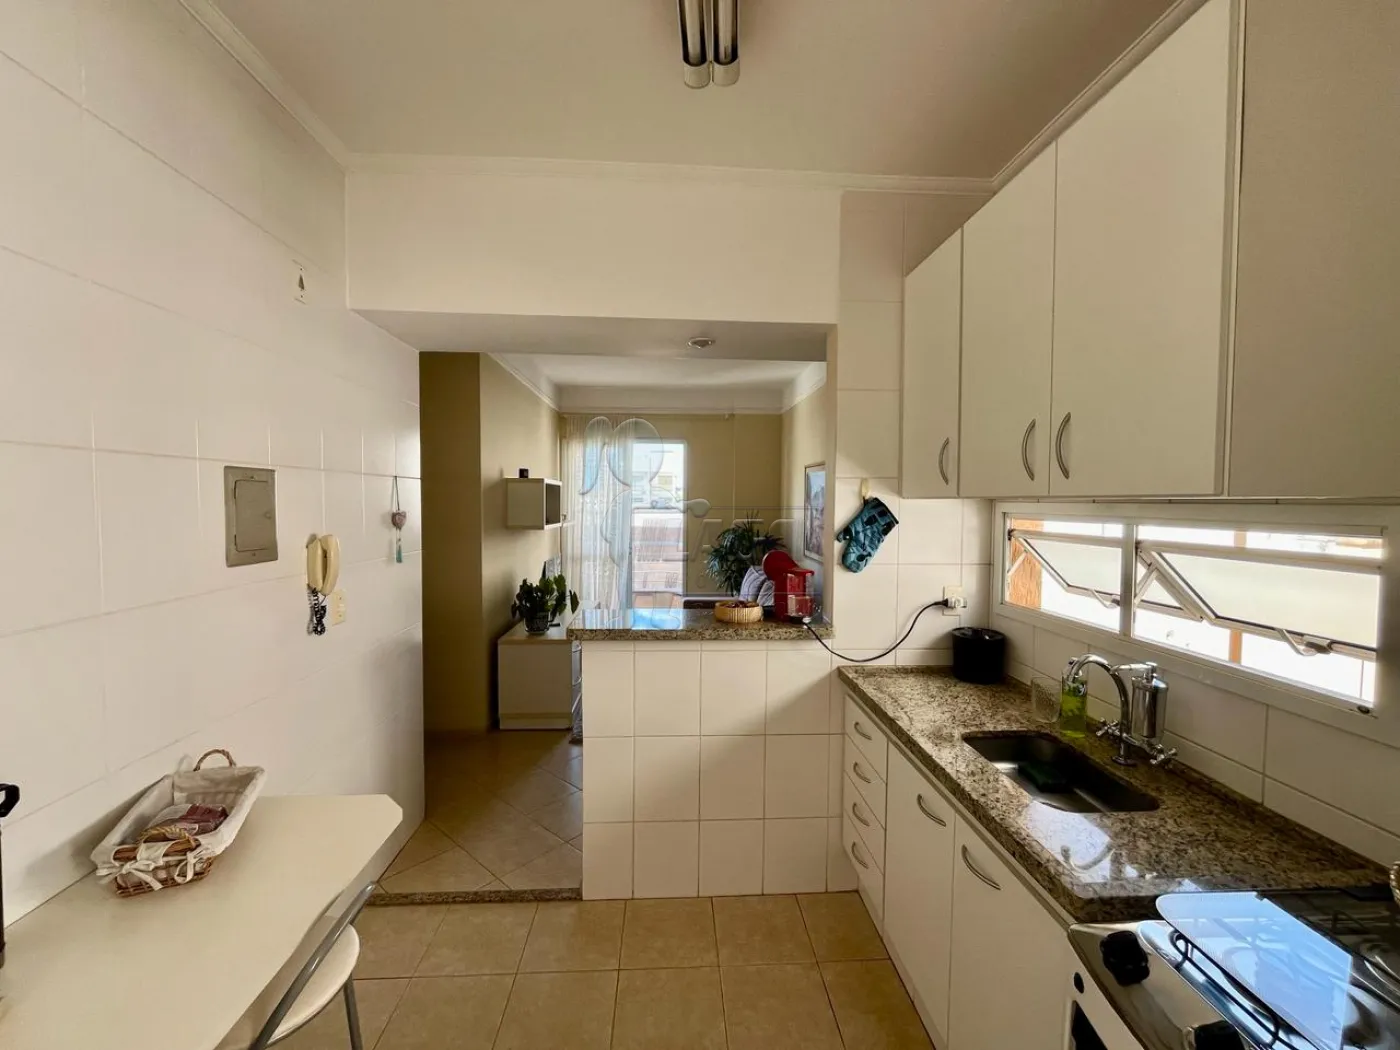 Alugar Apartamento / Padrão em Ribeirão Preto R$ 650,00 - Foto 2